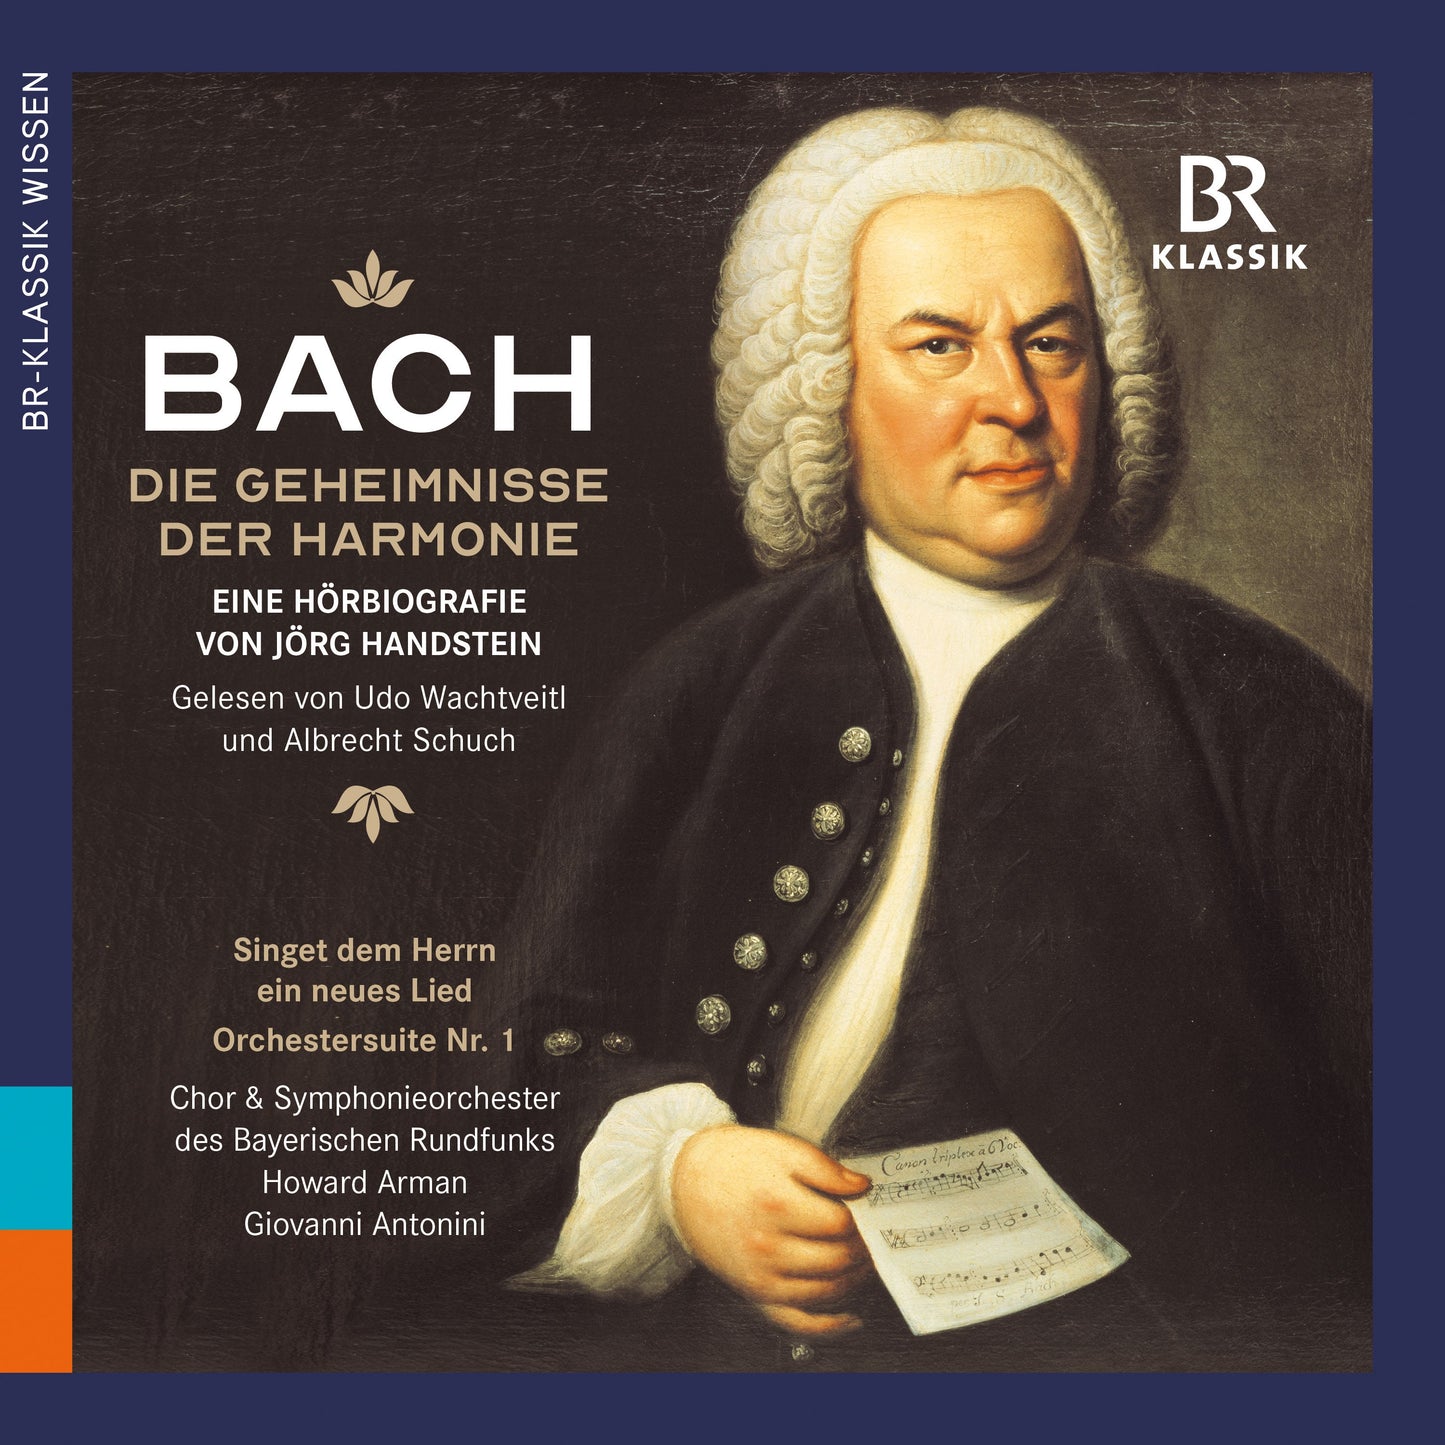 J.S. Bach: Die Geheimnisse Der Harmonie
Eine Hoerbiografie V